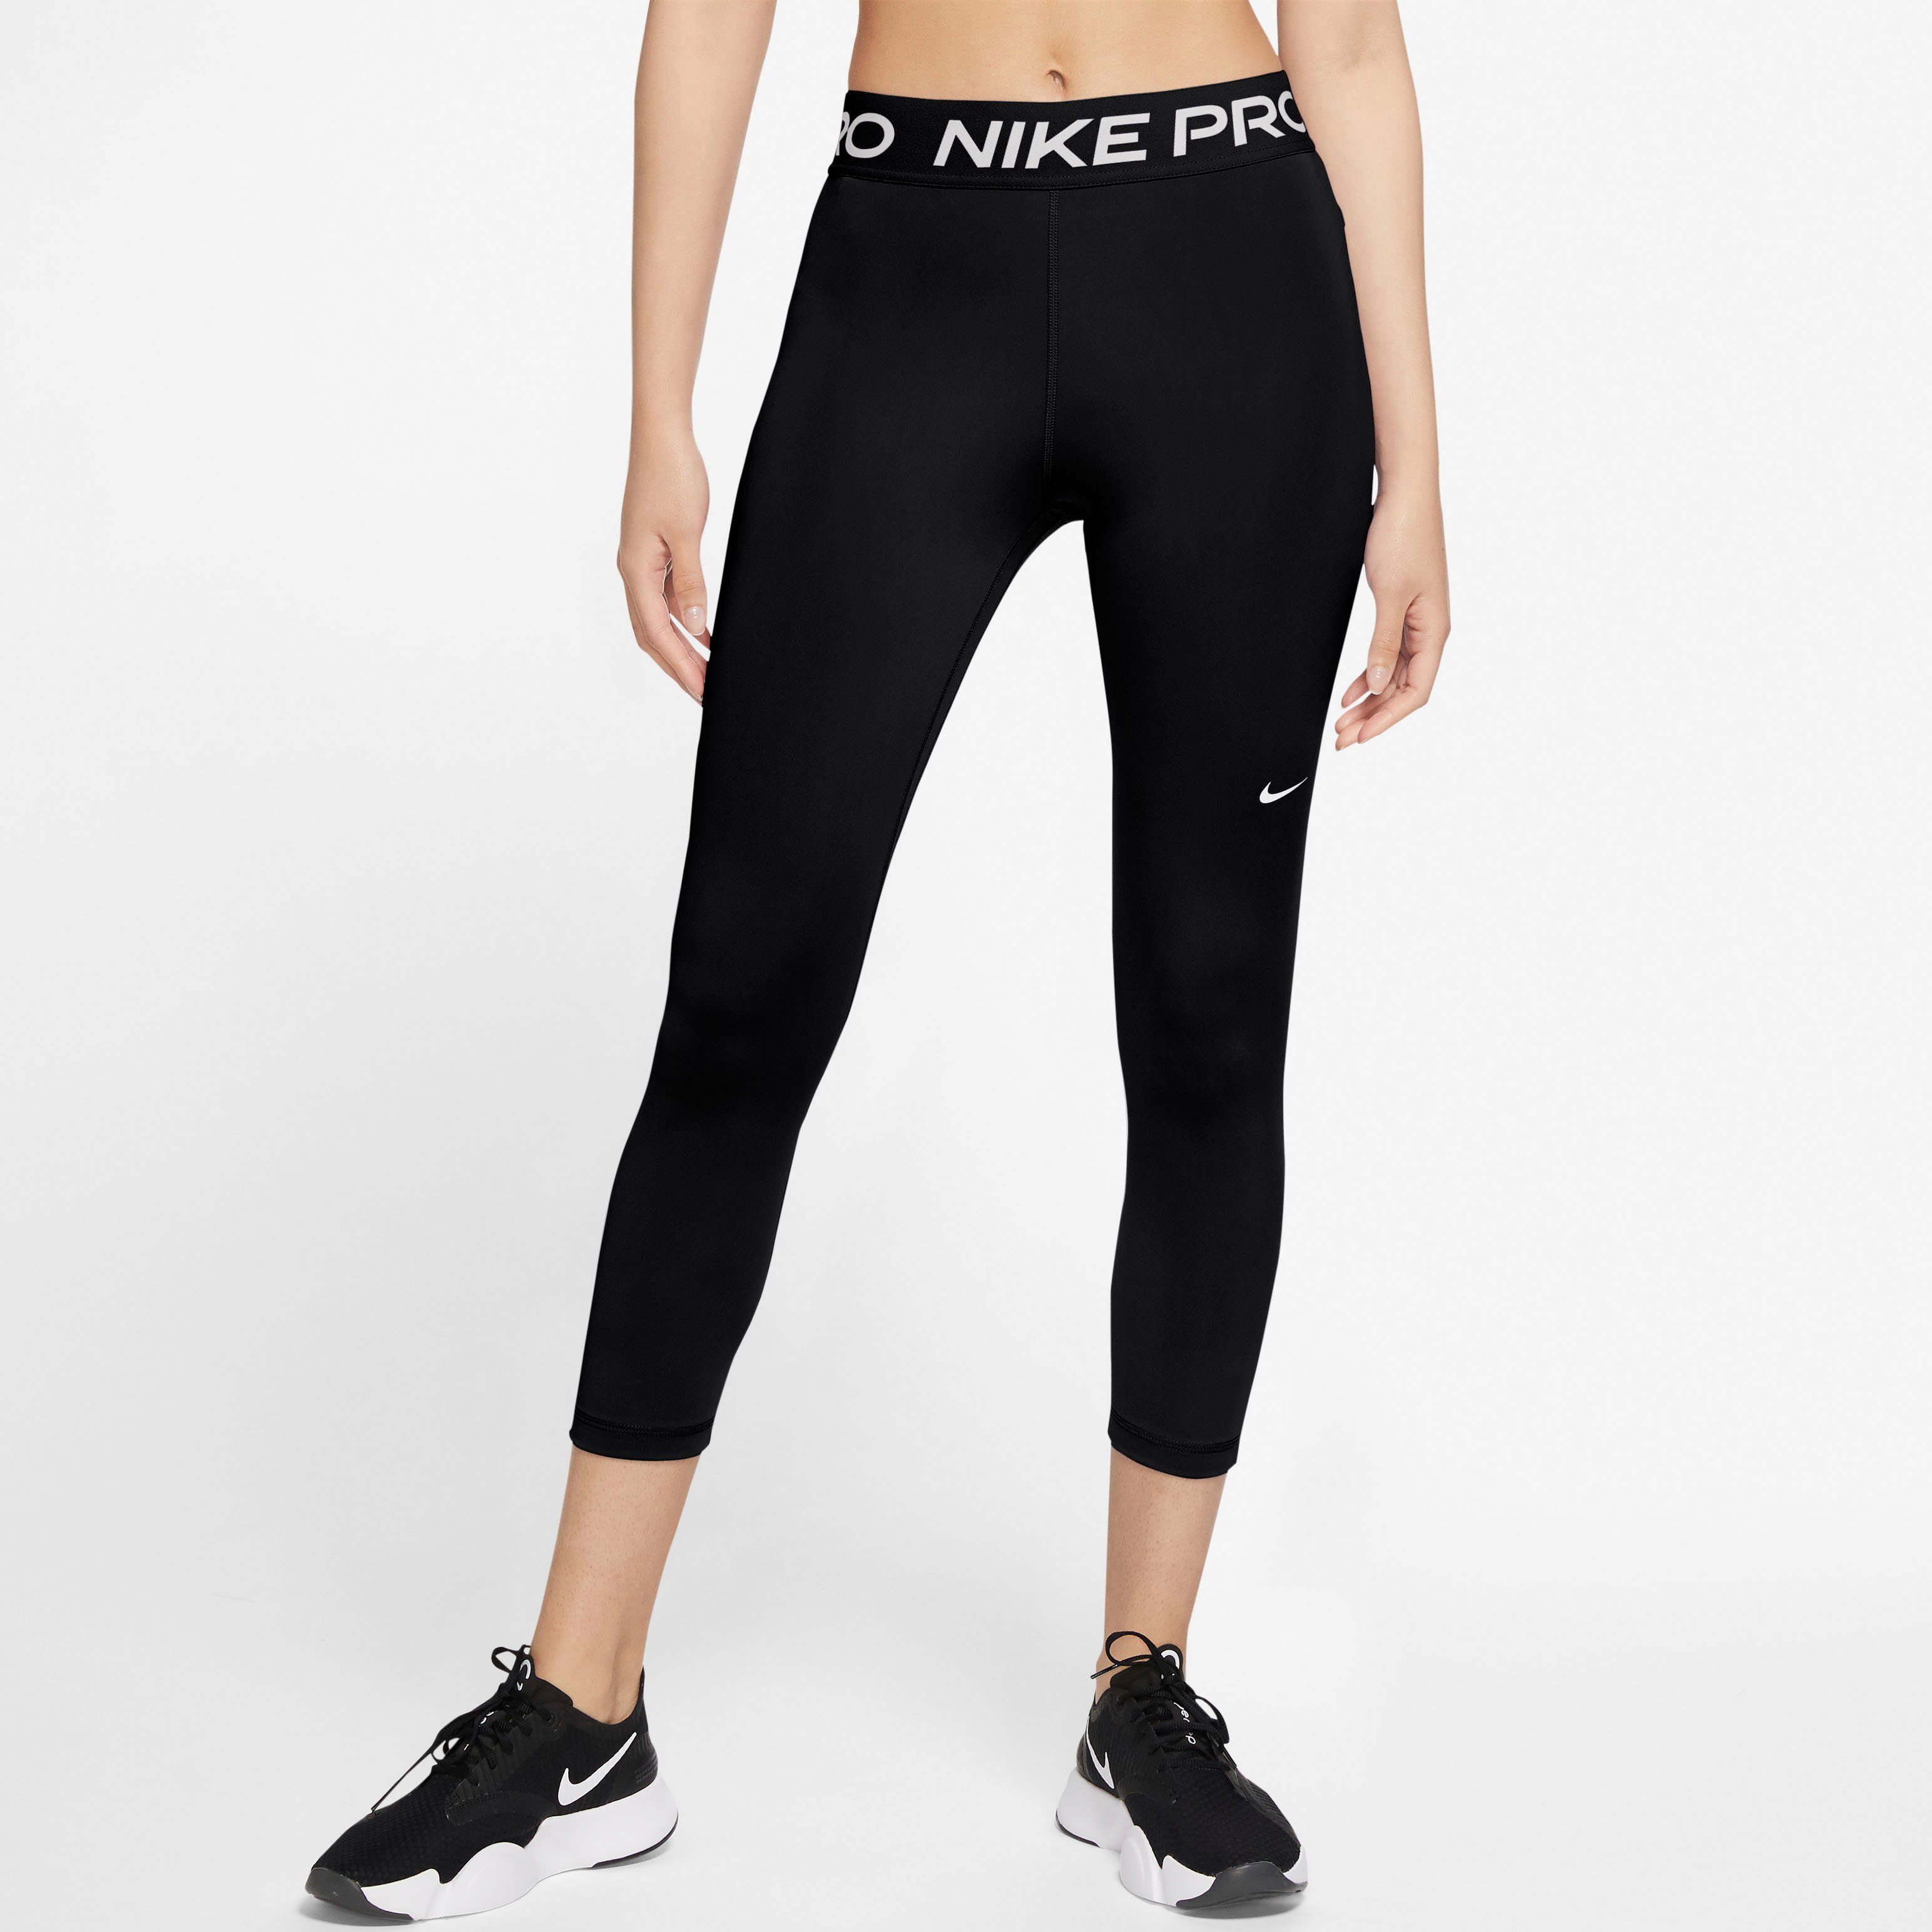 Women's Mid-Rise schwarz Pro Trainingstights Crop Leggings Nike